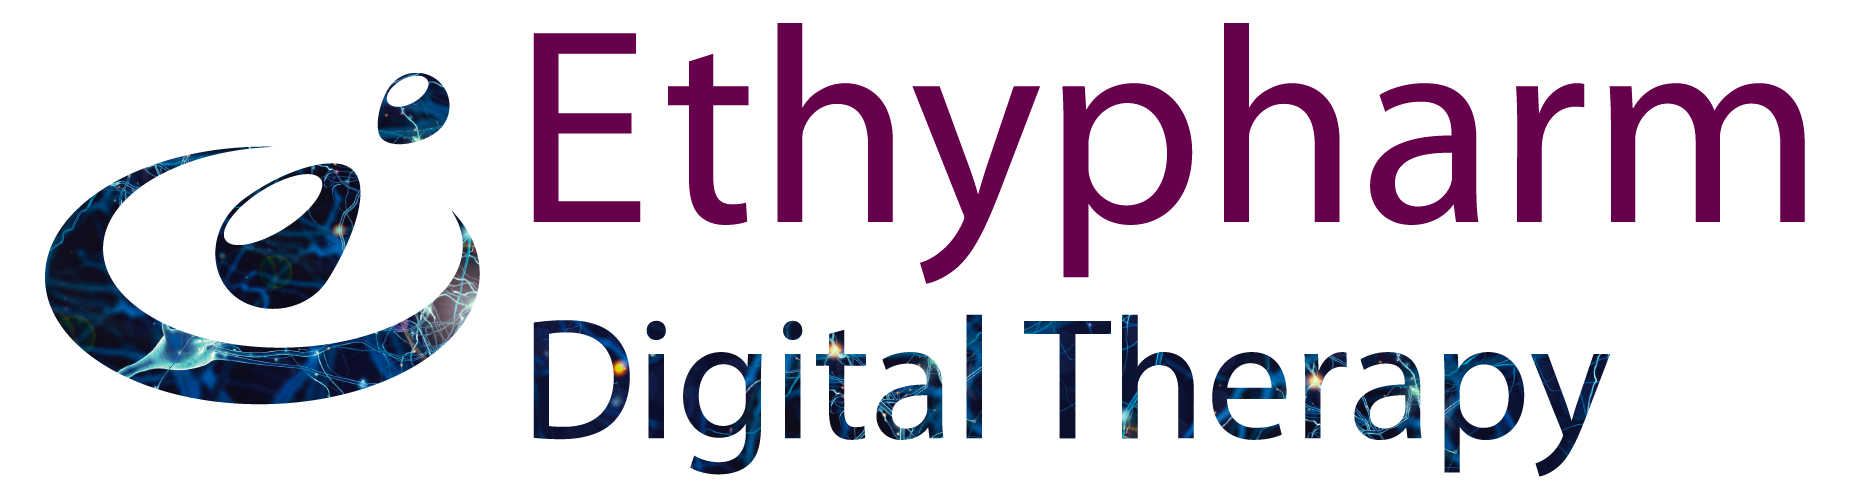 ETHYPHARM Digital Therapy